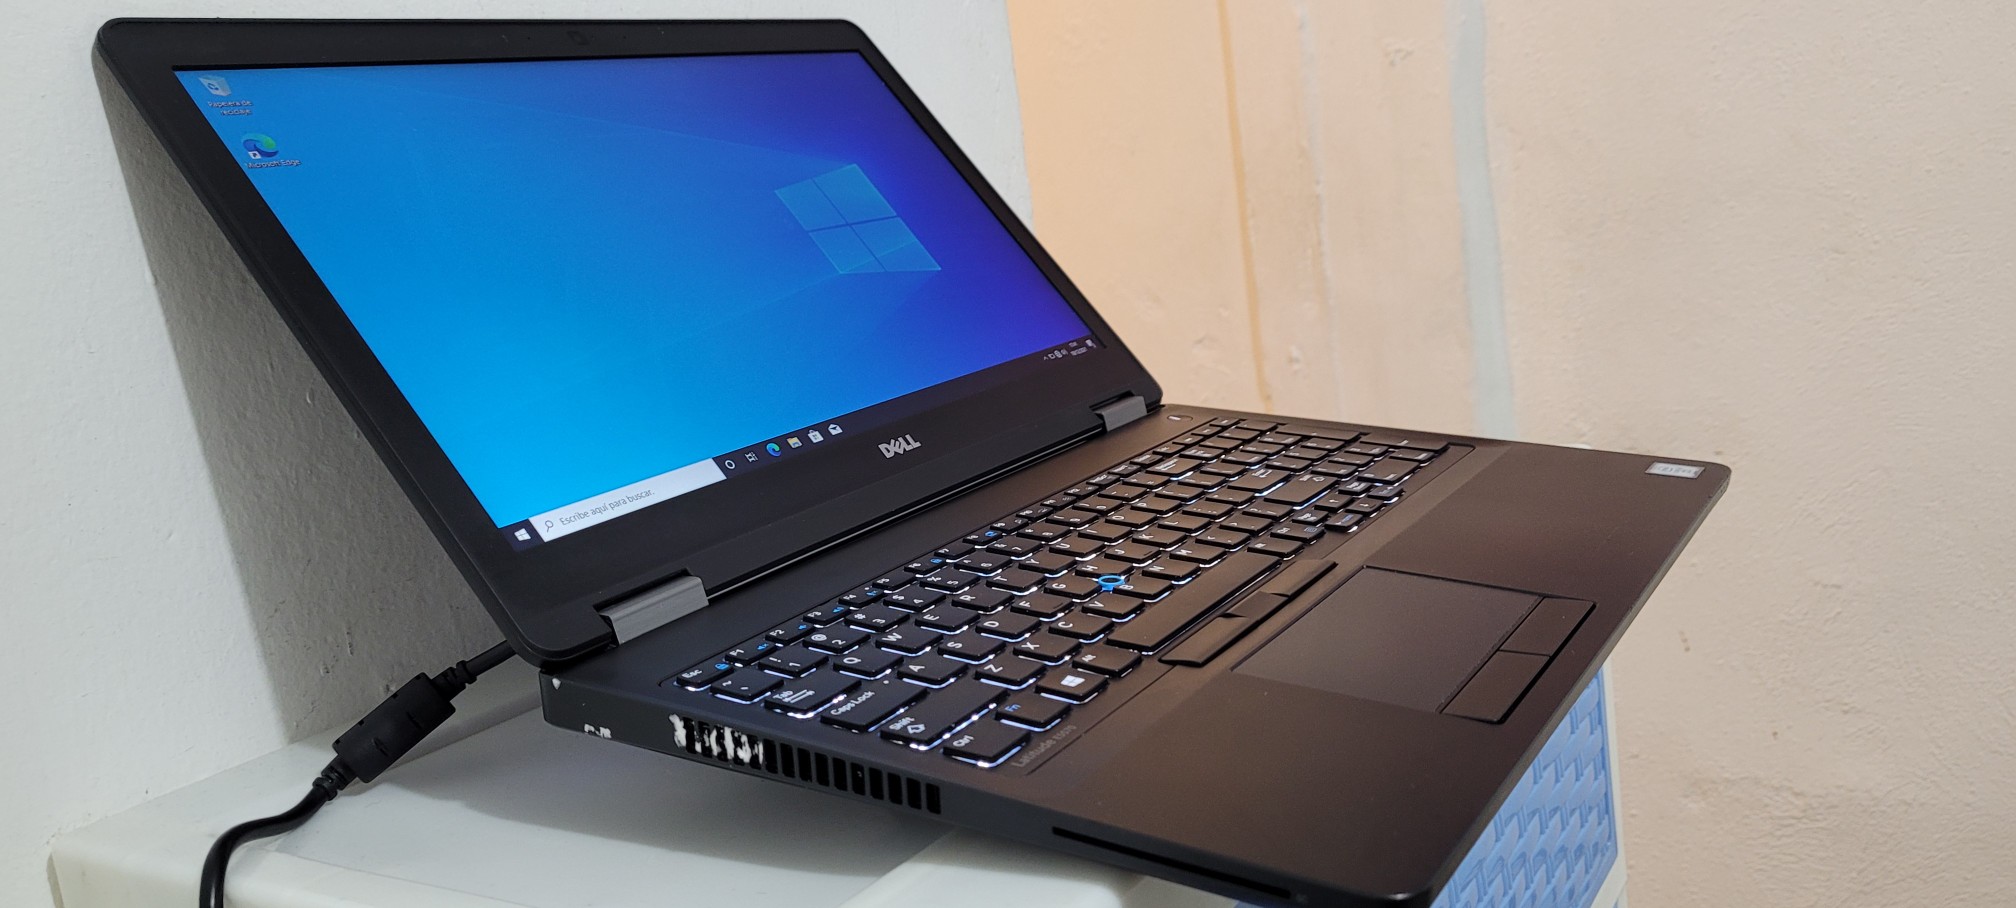 computadoras y laptops - Dell 5570 17 Pulg Core i5 6ta Ram 8gb ddr4 Disco 128gb Y 500gb Full 1